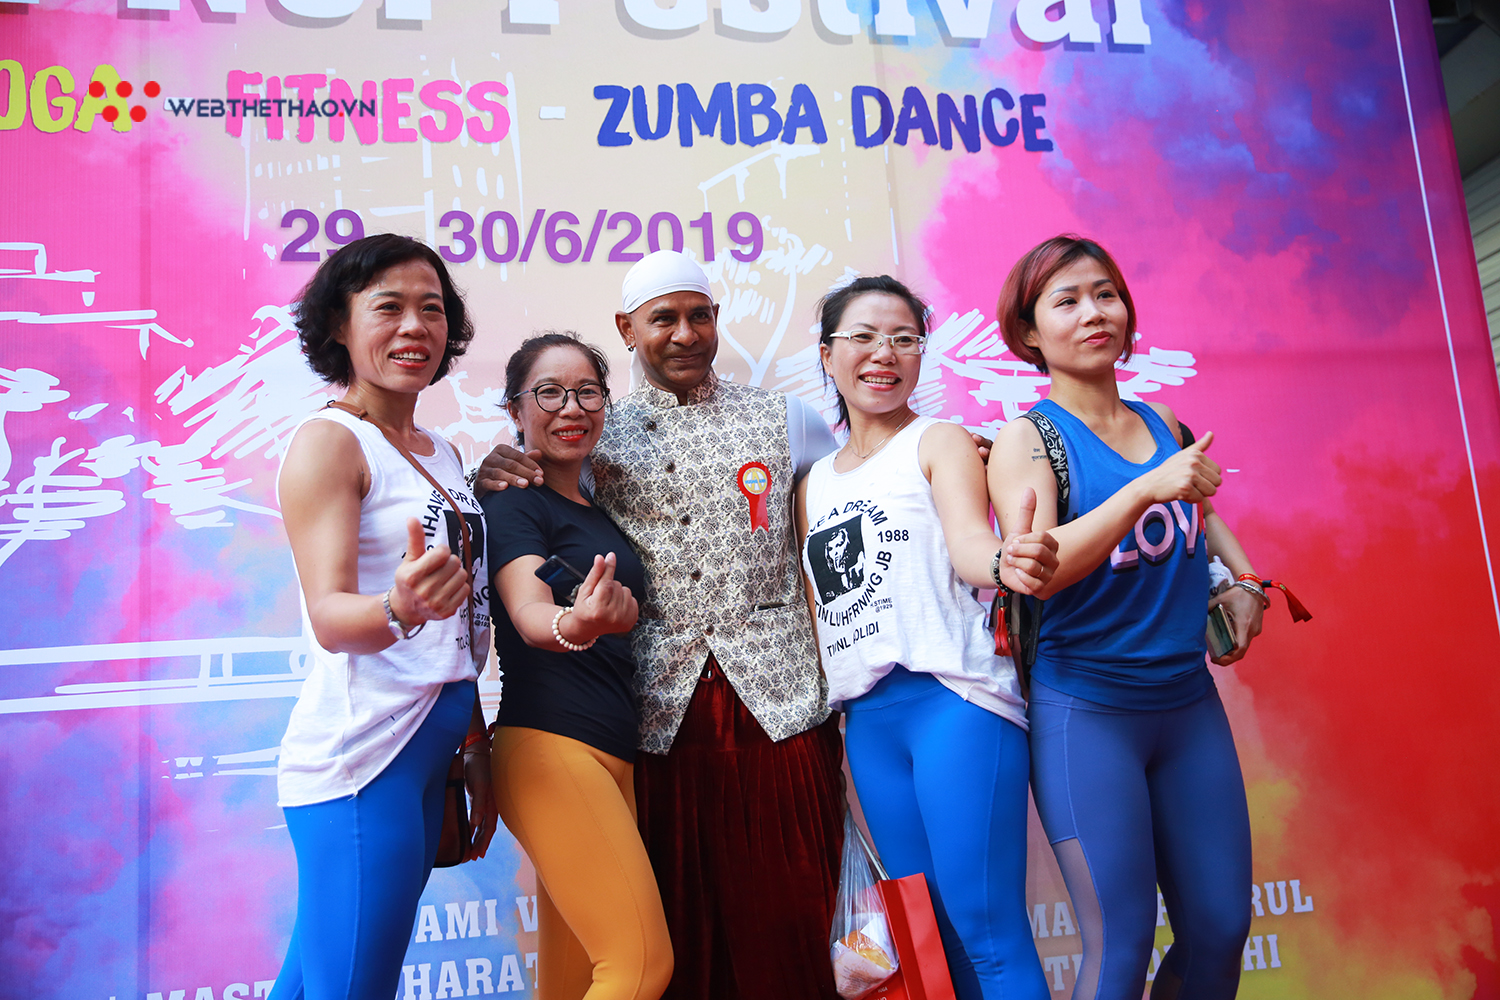 Hà Nội Yoga, Fitness, Zumba Dance Festival 2019 tưng bừng khai mạc với dàn chuyên gia hàng đầu thế giới